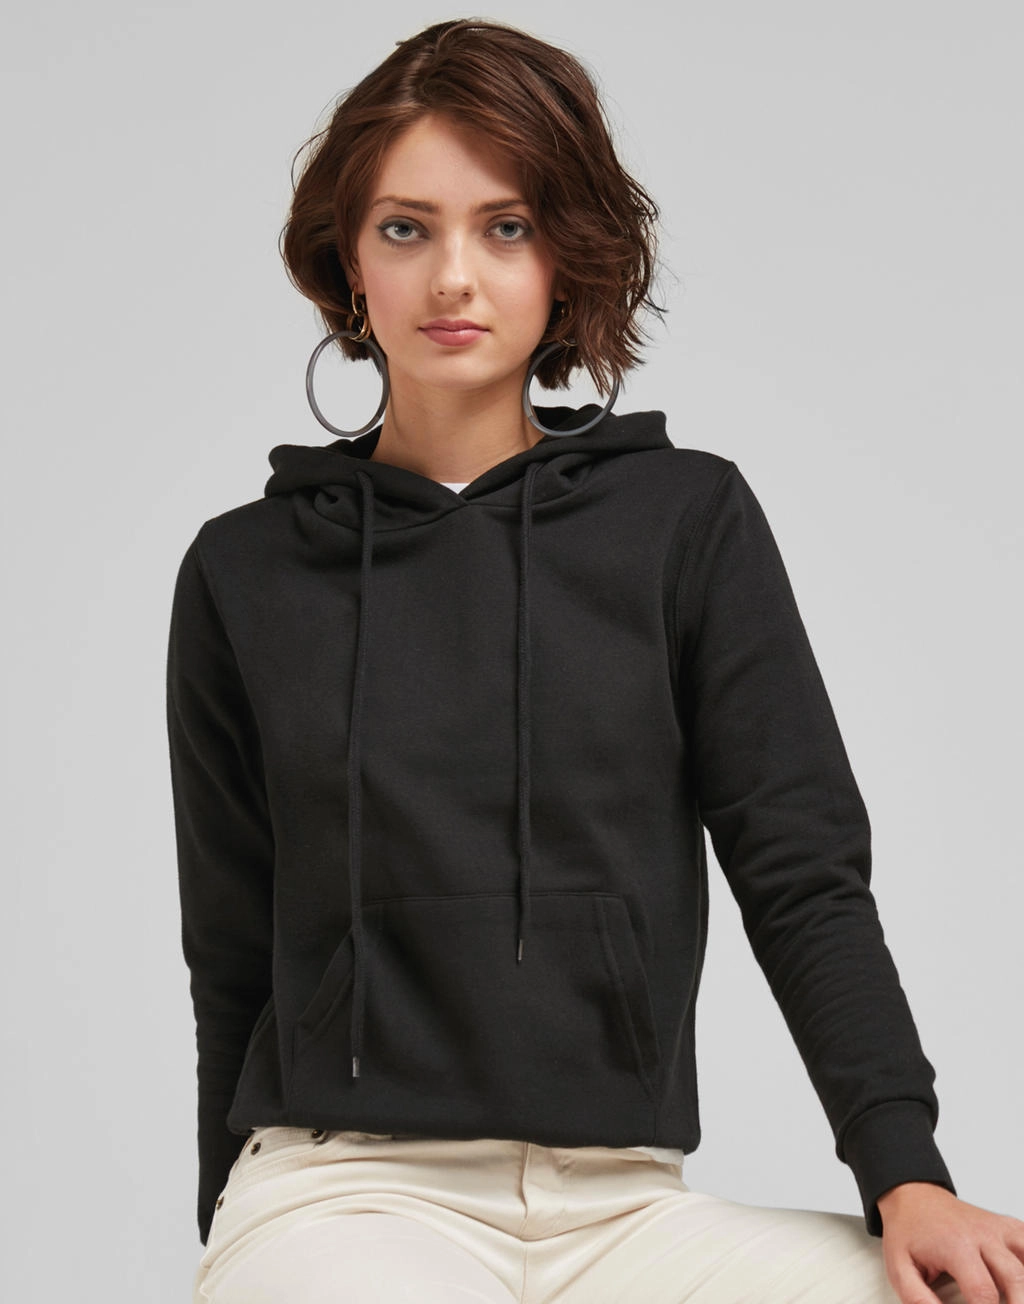 Hooded Sweatshirt Women zum Besticken und Bedrucken mit Ihren Logo, Schriftzug oder Motiv.